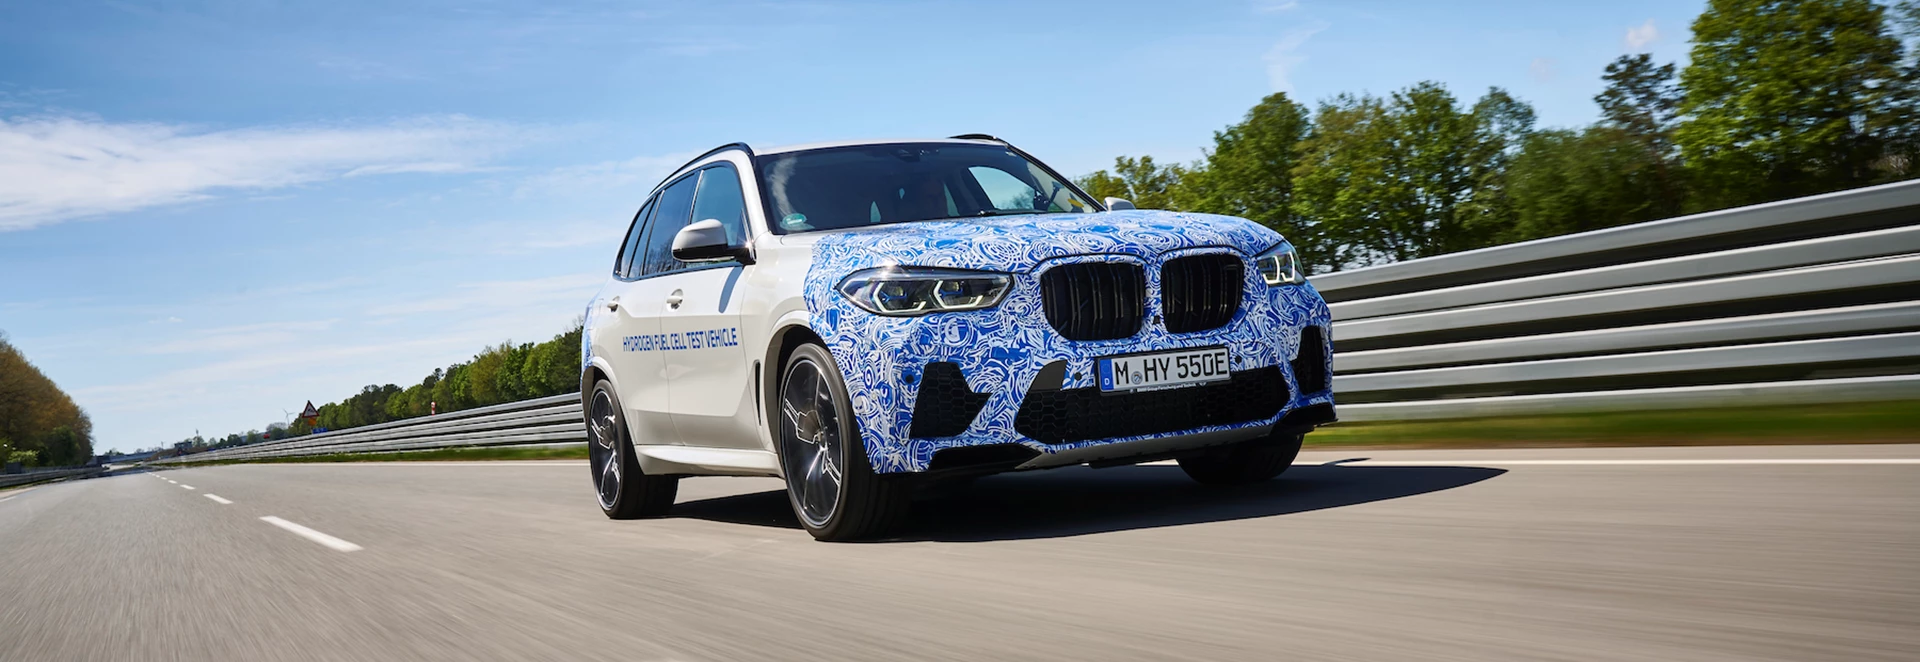 BMW begins testing hydrogen cars ahead of 2022 launch 